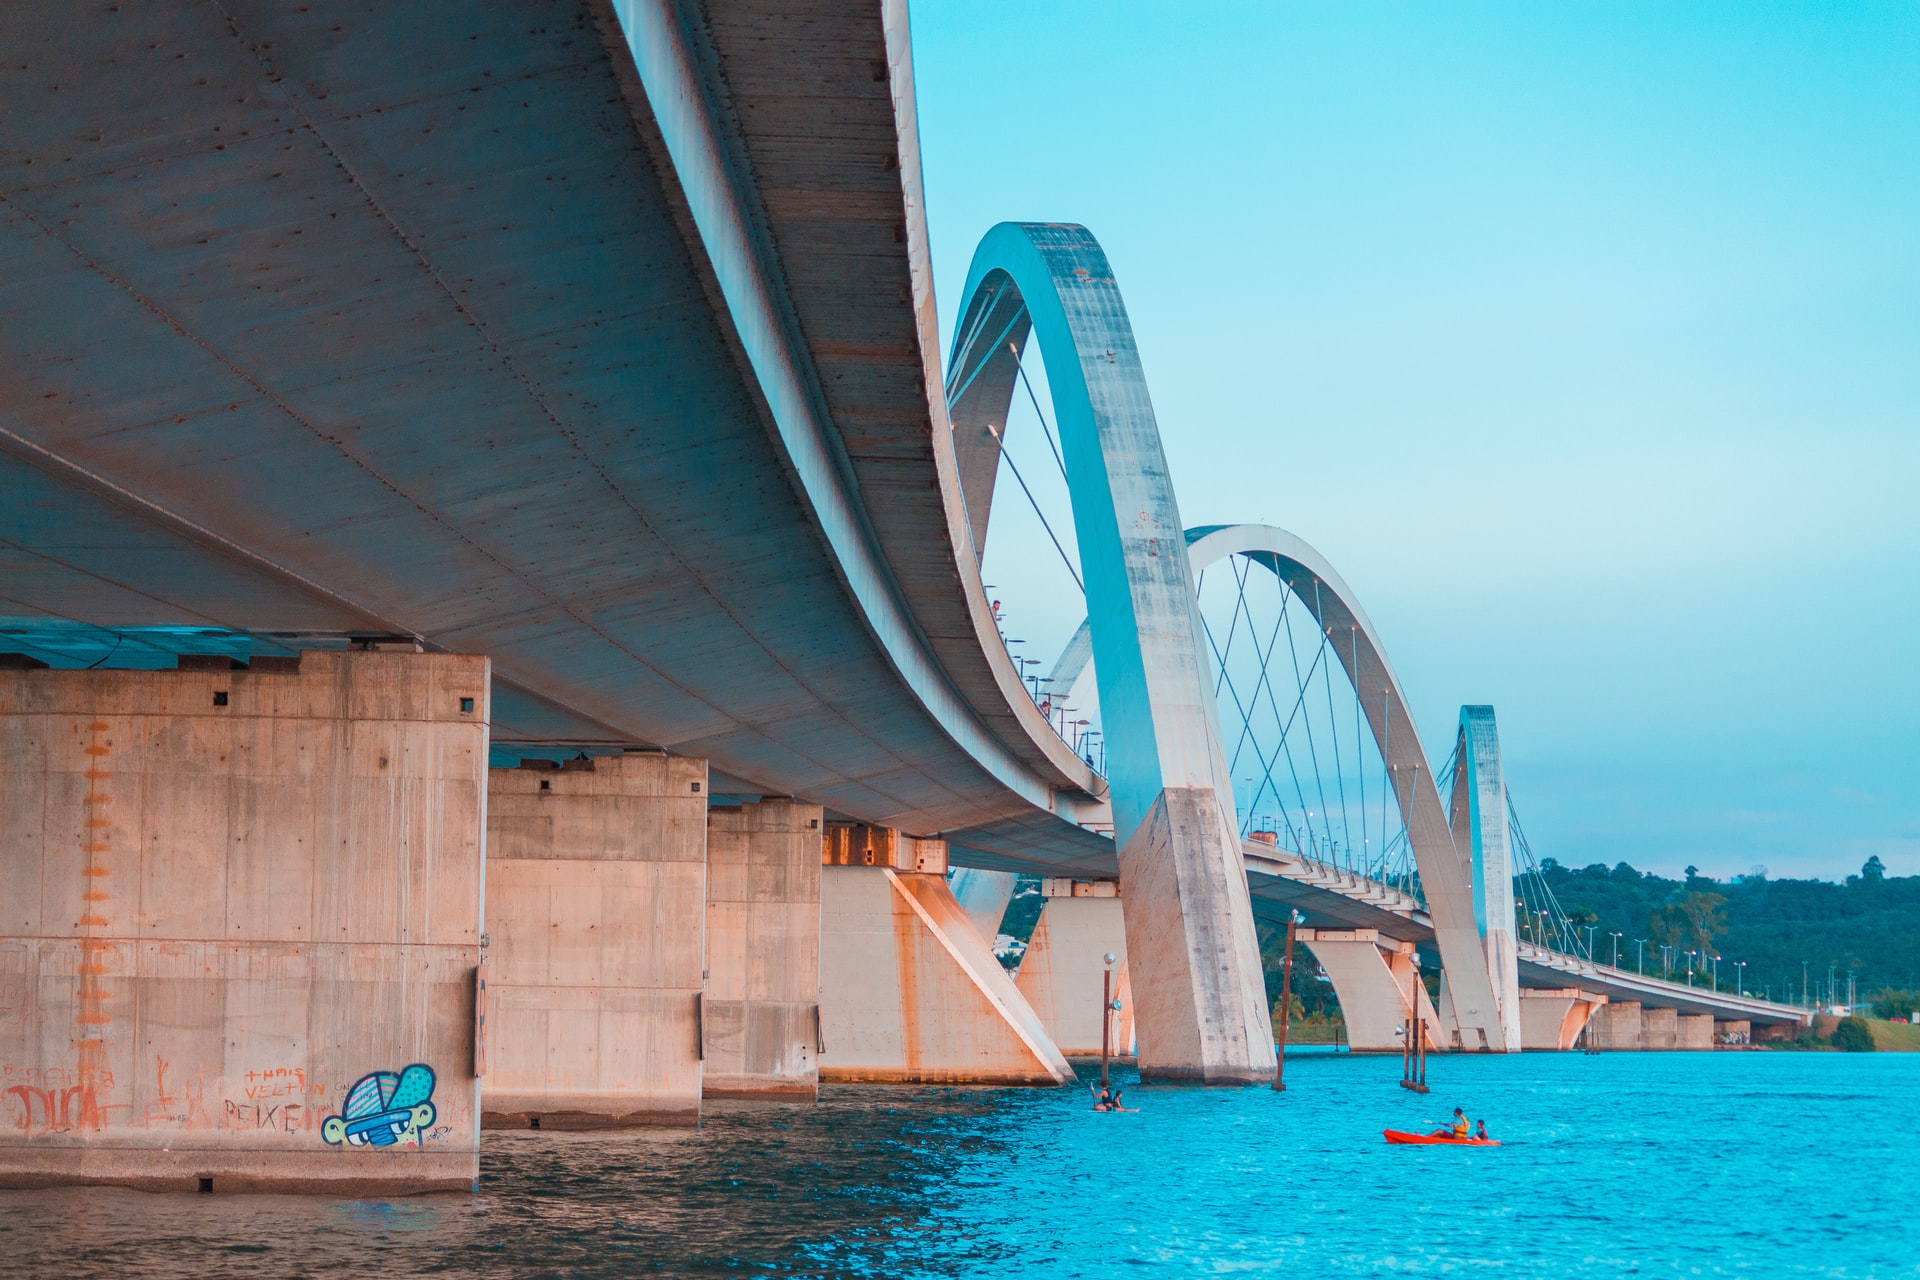 ponte JK no lago Paranoá em Brasília DF